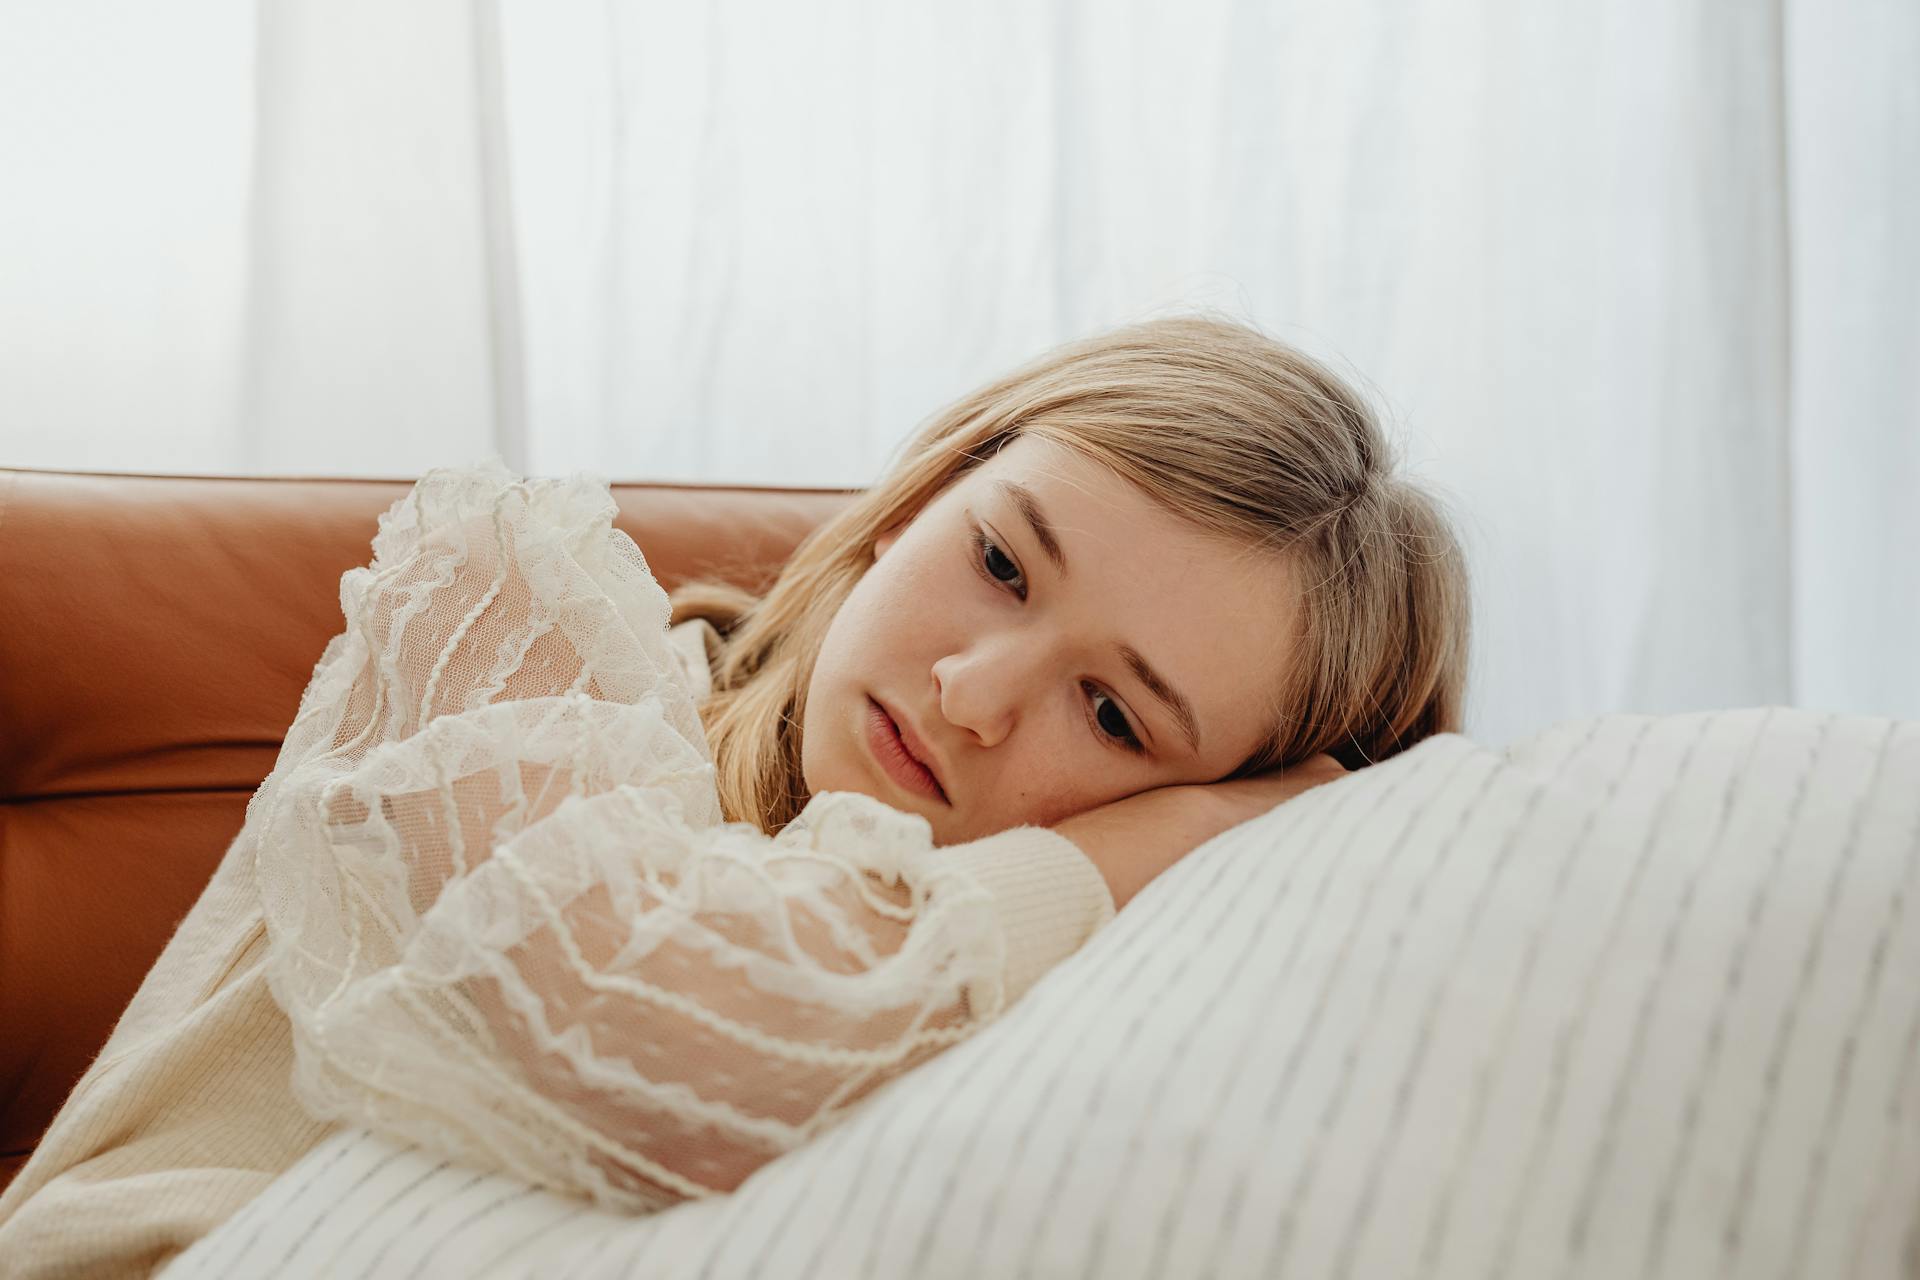 Una adolescente triste tumbada sobre una almohada | Fuente: Pexels